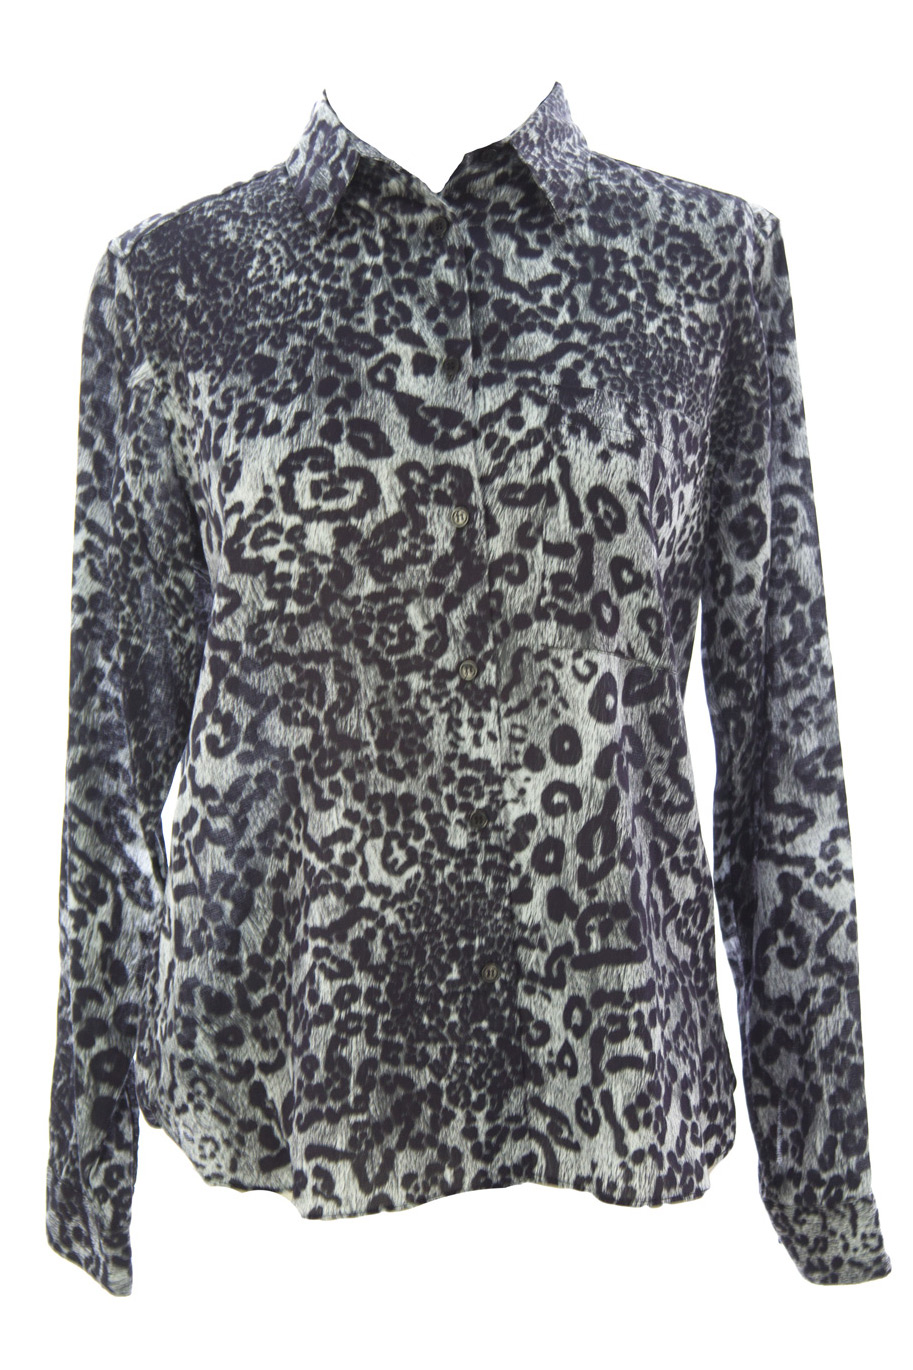 SURFACE TO AIR Women's Snow Leopard Zulu Shirt $295 NEW | eBay